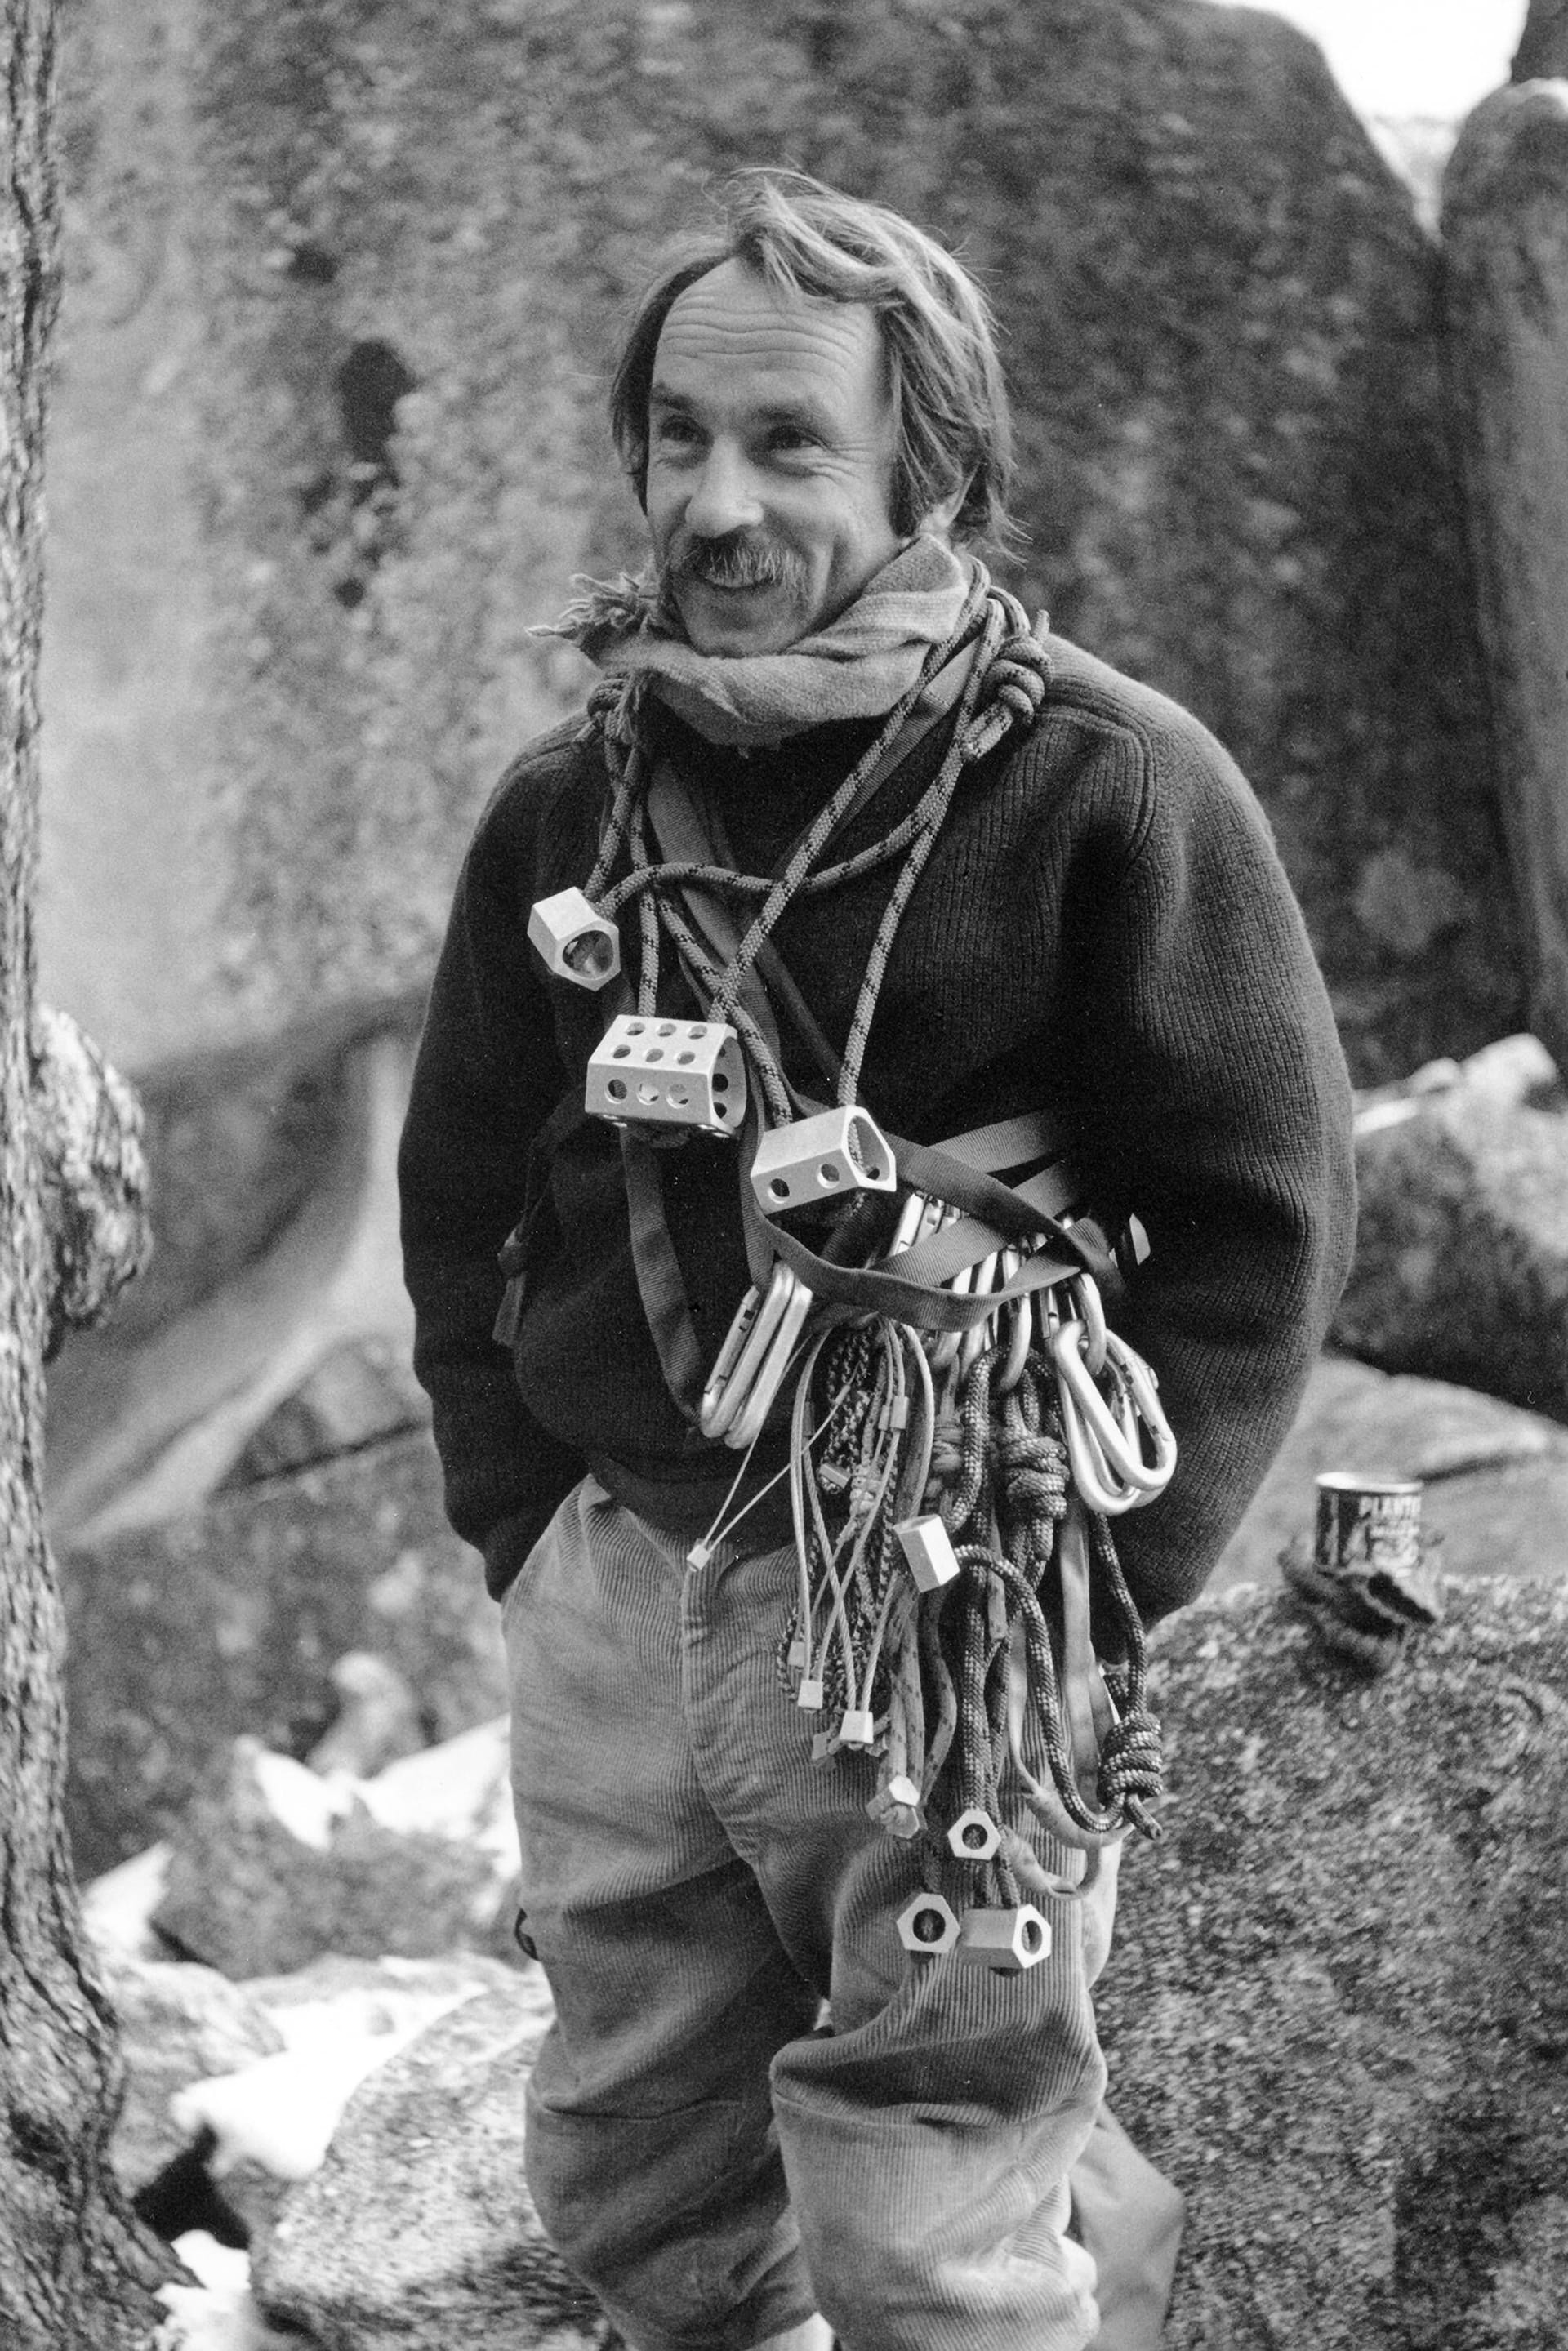 Yvon Chouinard beim Klettern in den 1970er Jahren: Als das Wirtschaftsmagazin Forbes ihn als Milliardär auflistete, war Chouinard nach eigener Aussage "angepisst", da er ein einfaches Leben führe.